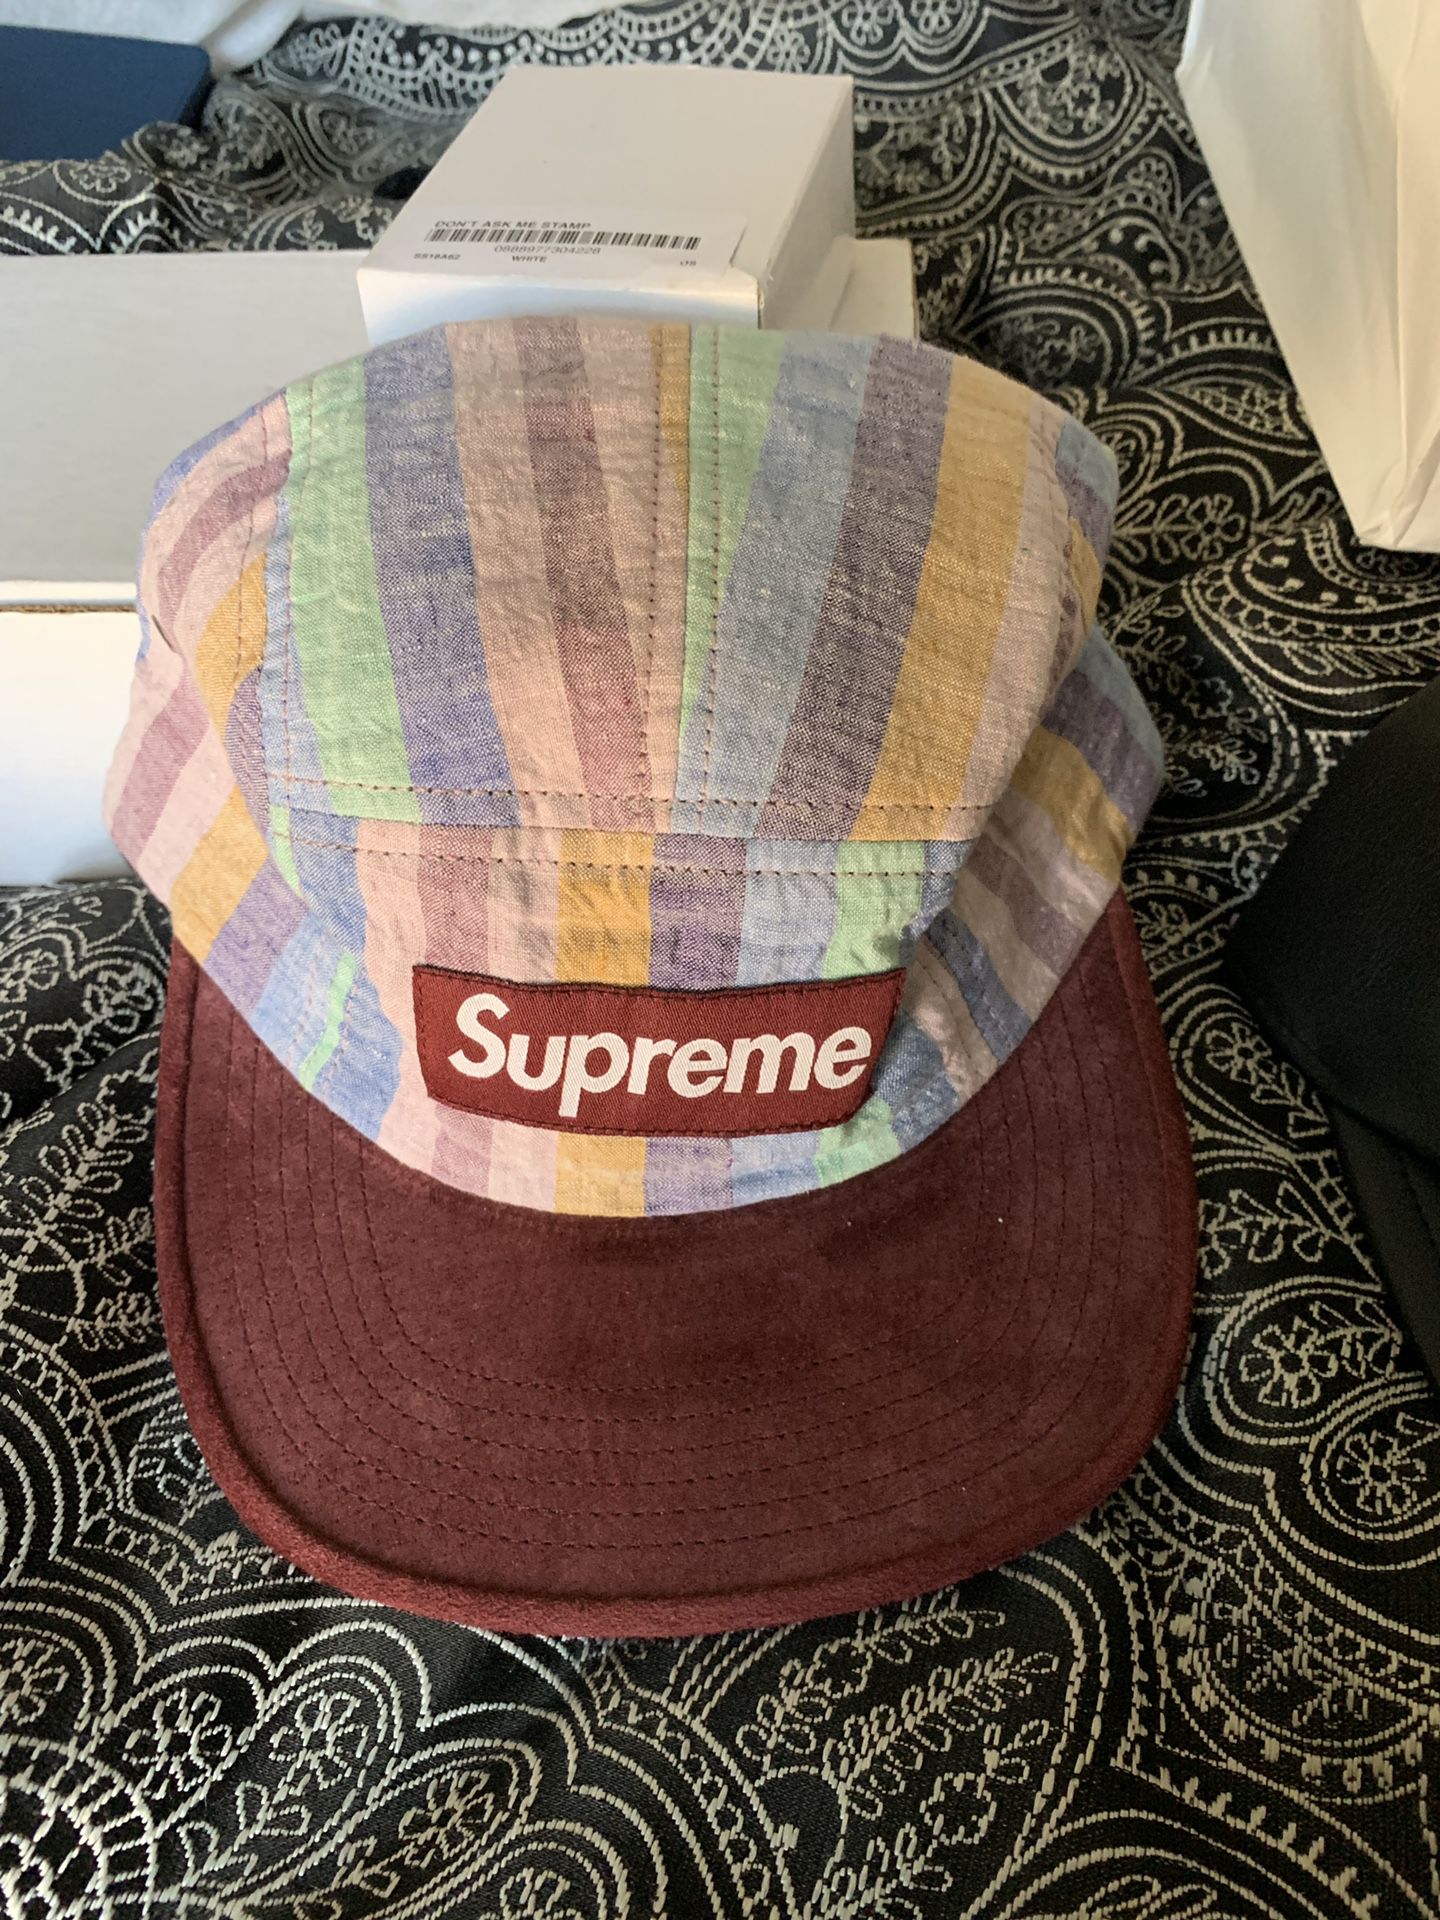 Suprem supreme supreme hats brick